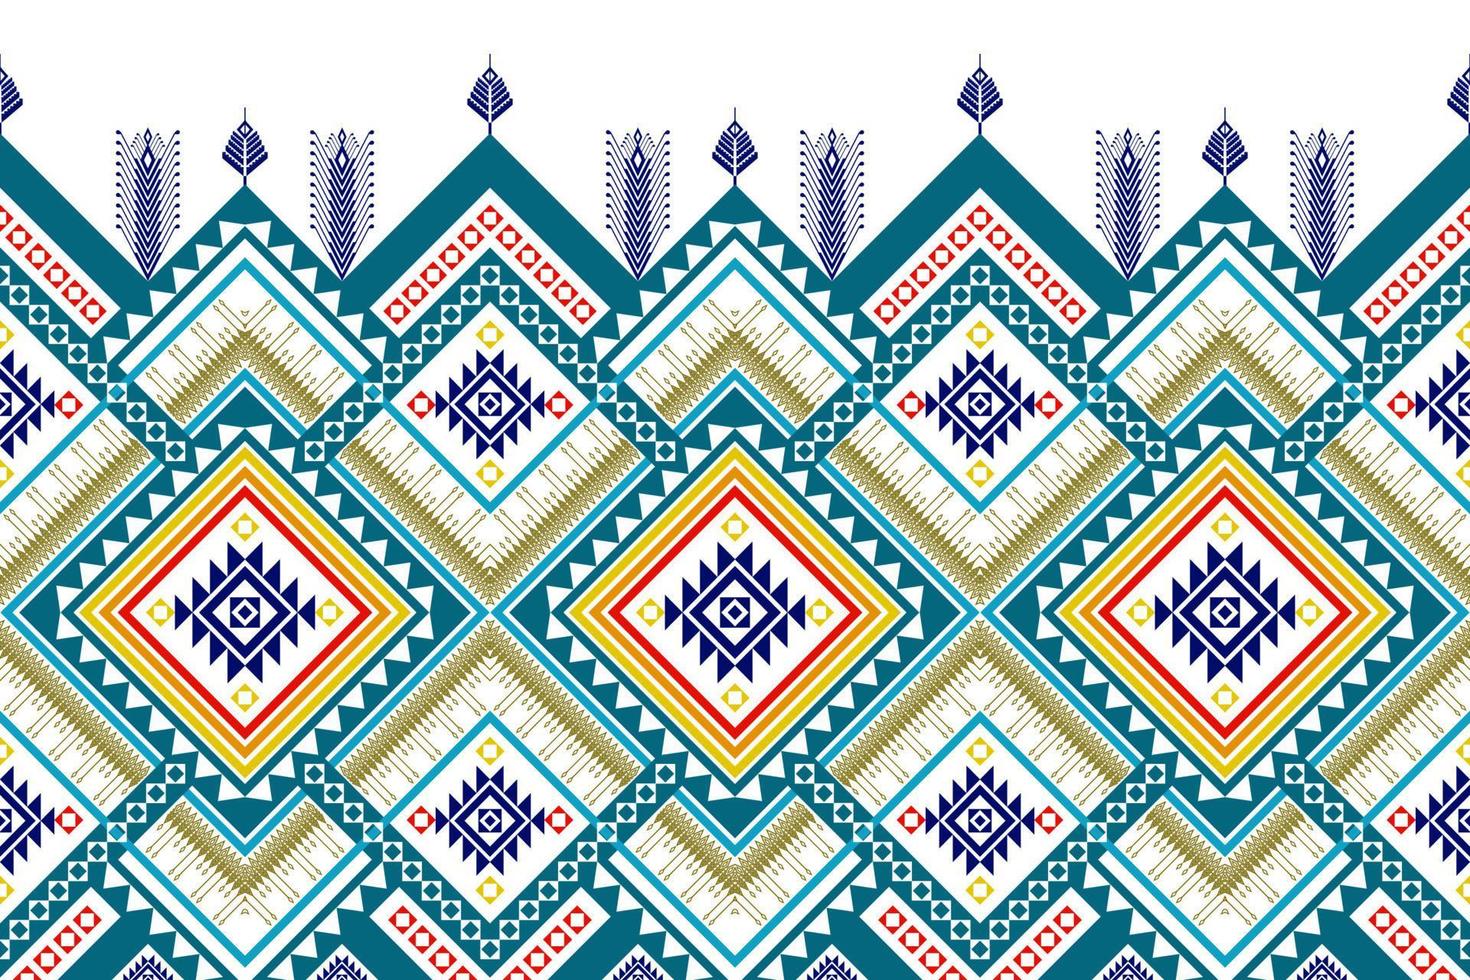 diseño geométrico étnico de patrones sin fisuras. tela azteca alfombra mandala ornamento chevron textil decoración papel pintado. fondo de ornamento de bordado tradicional indio africano de pavo tribal vector